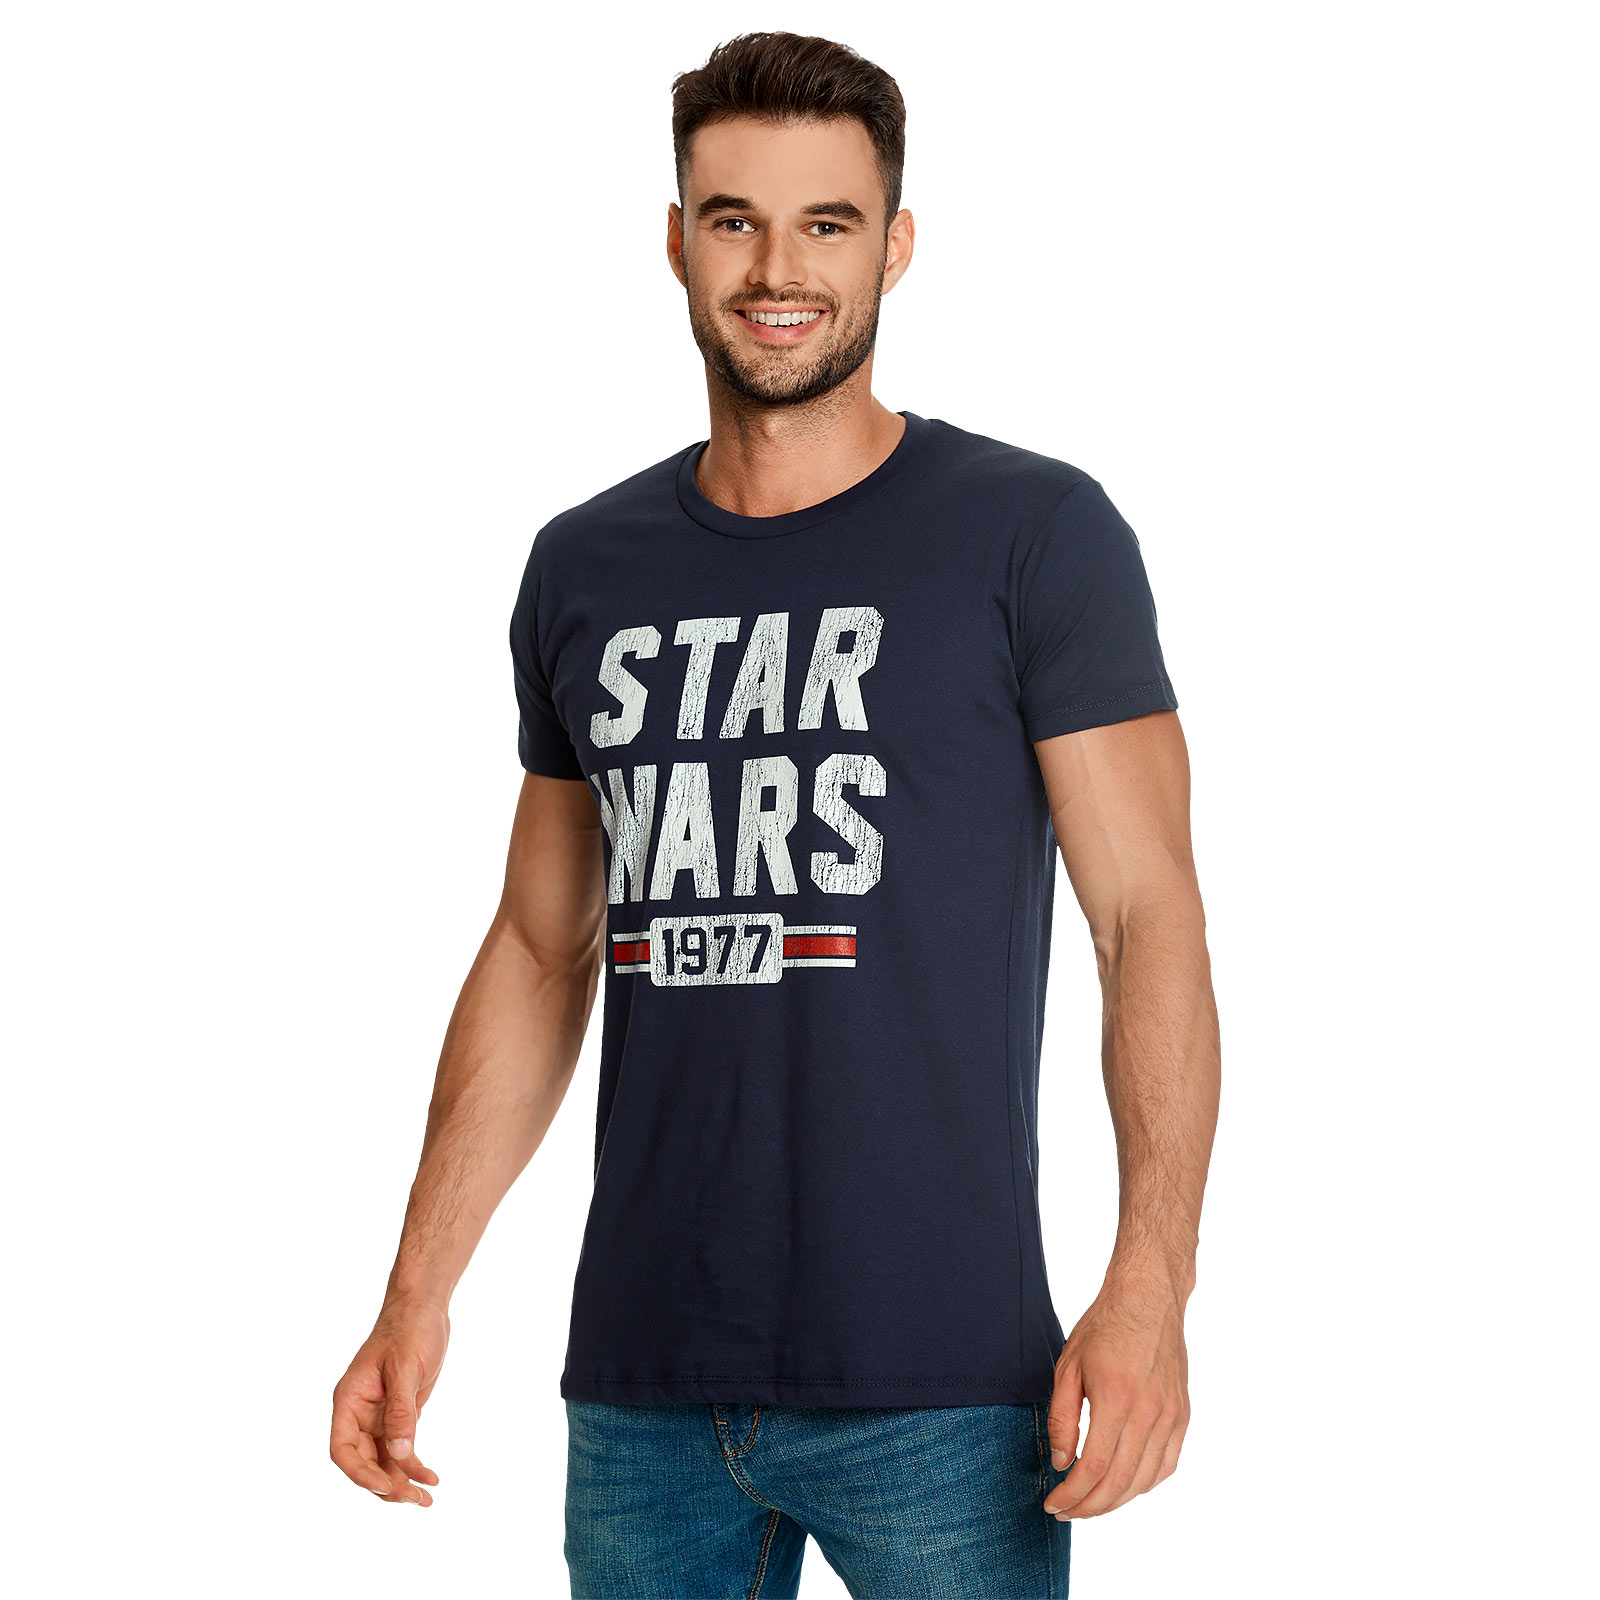 Star Wars of 1977 Distressed T-Shirt blau